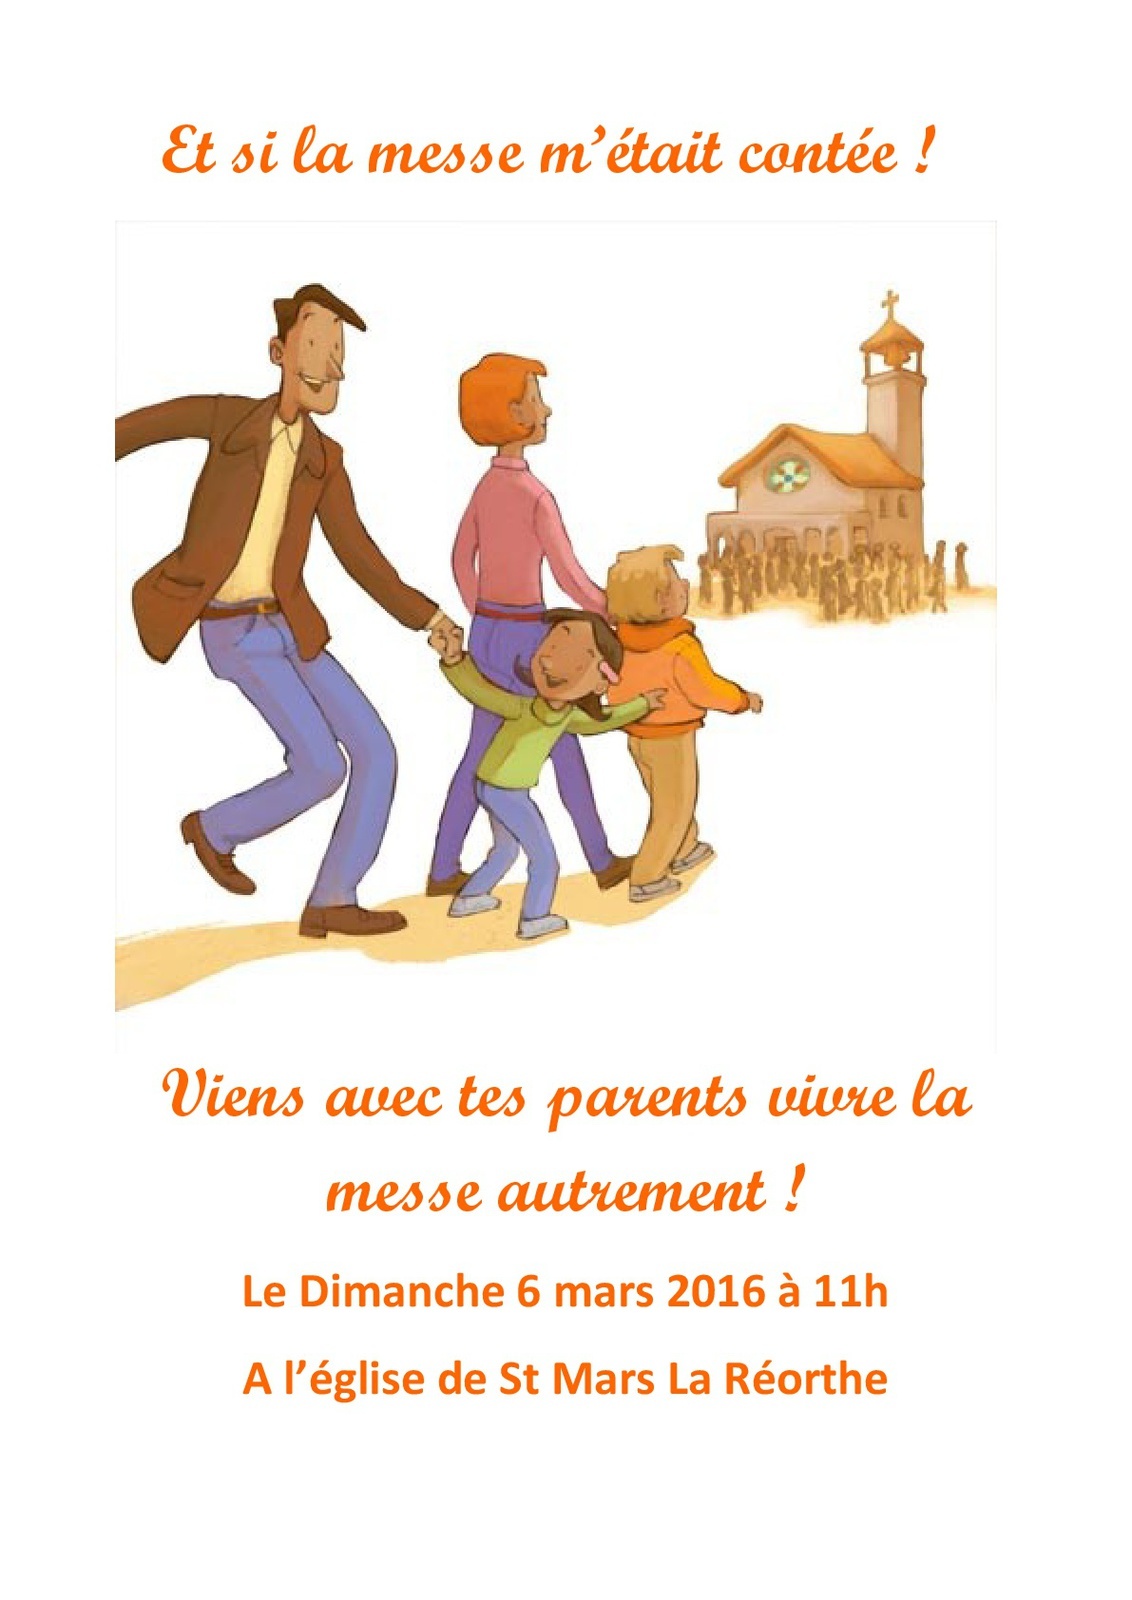 Viens avec tes parents vivre la messe autrement - Le Dimanche 6 mars 2016 à 11h A l’église de St Mars La Réorthe